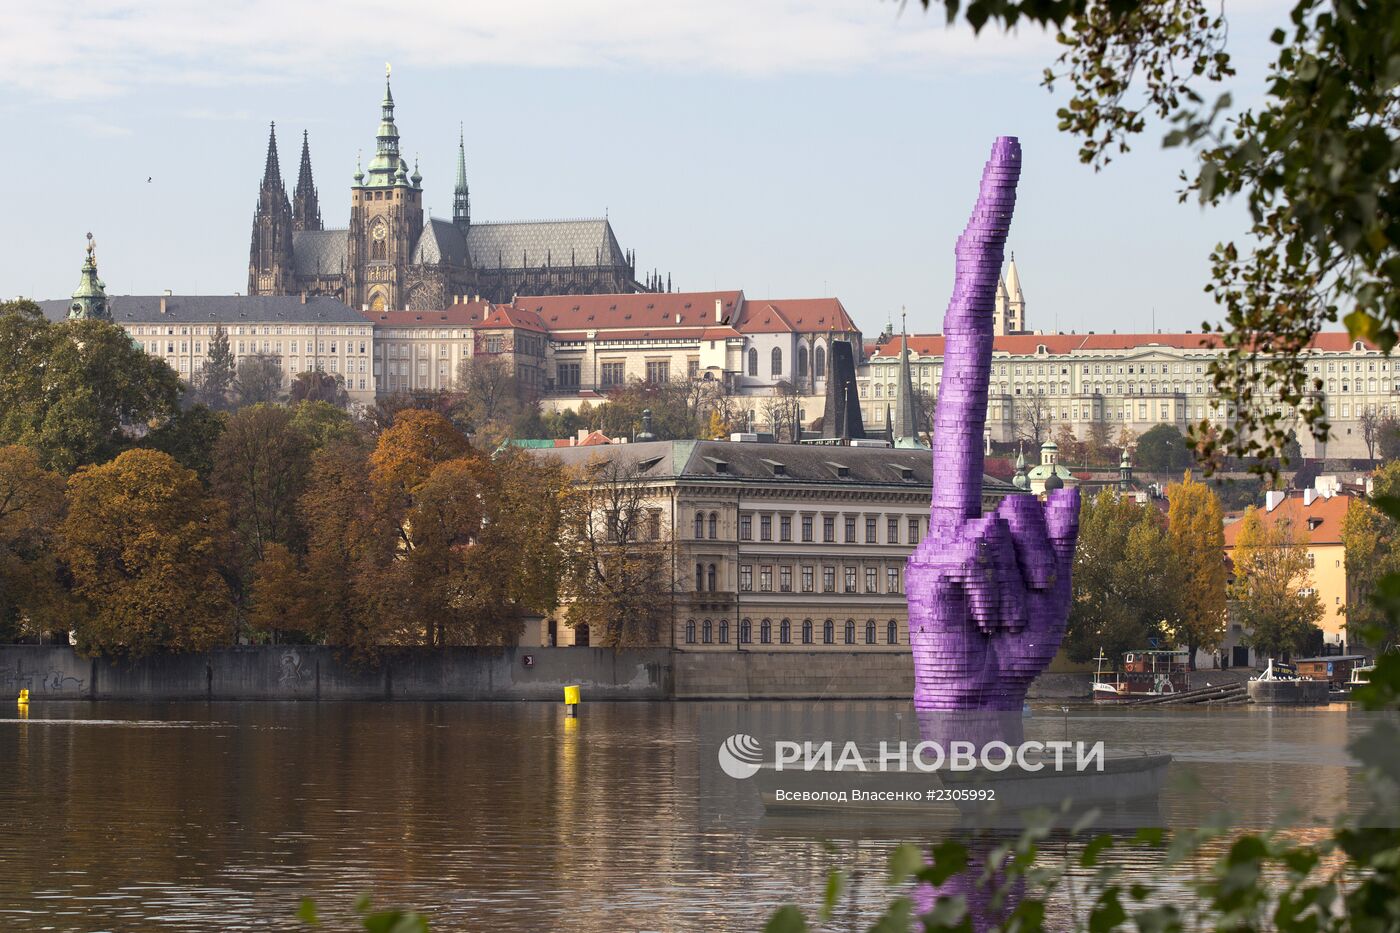 Огромный средний палец появился в центре Праги в канун выборов